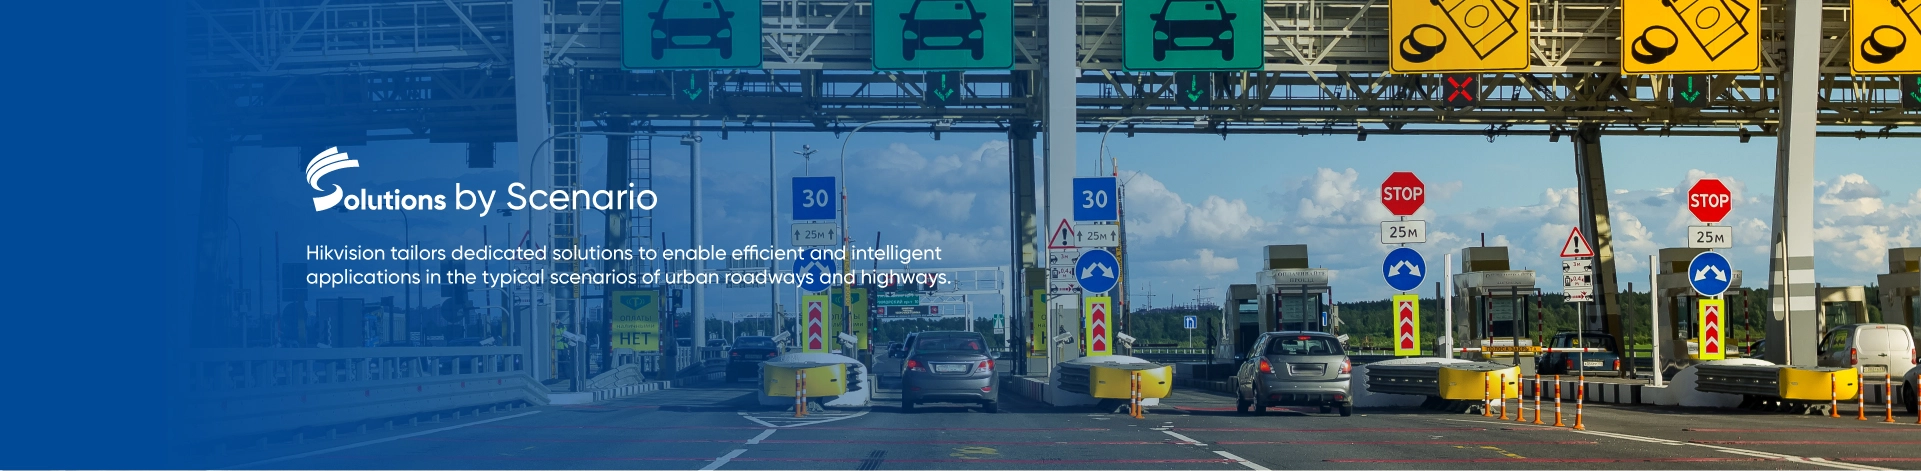 Hikvision adapta las soluciones dedicadas para permitir la eficiencia e inteligencia en los escenarios más comunes de las vías y autopistas urbanas.